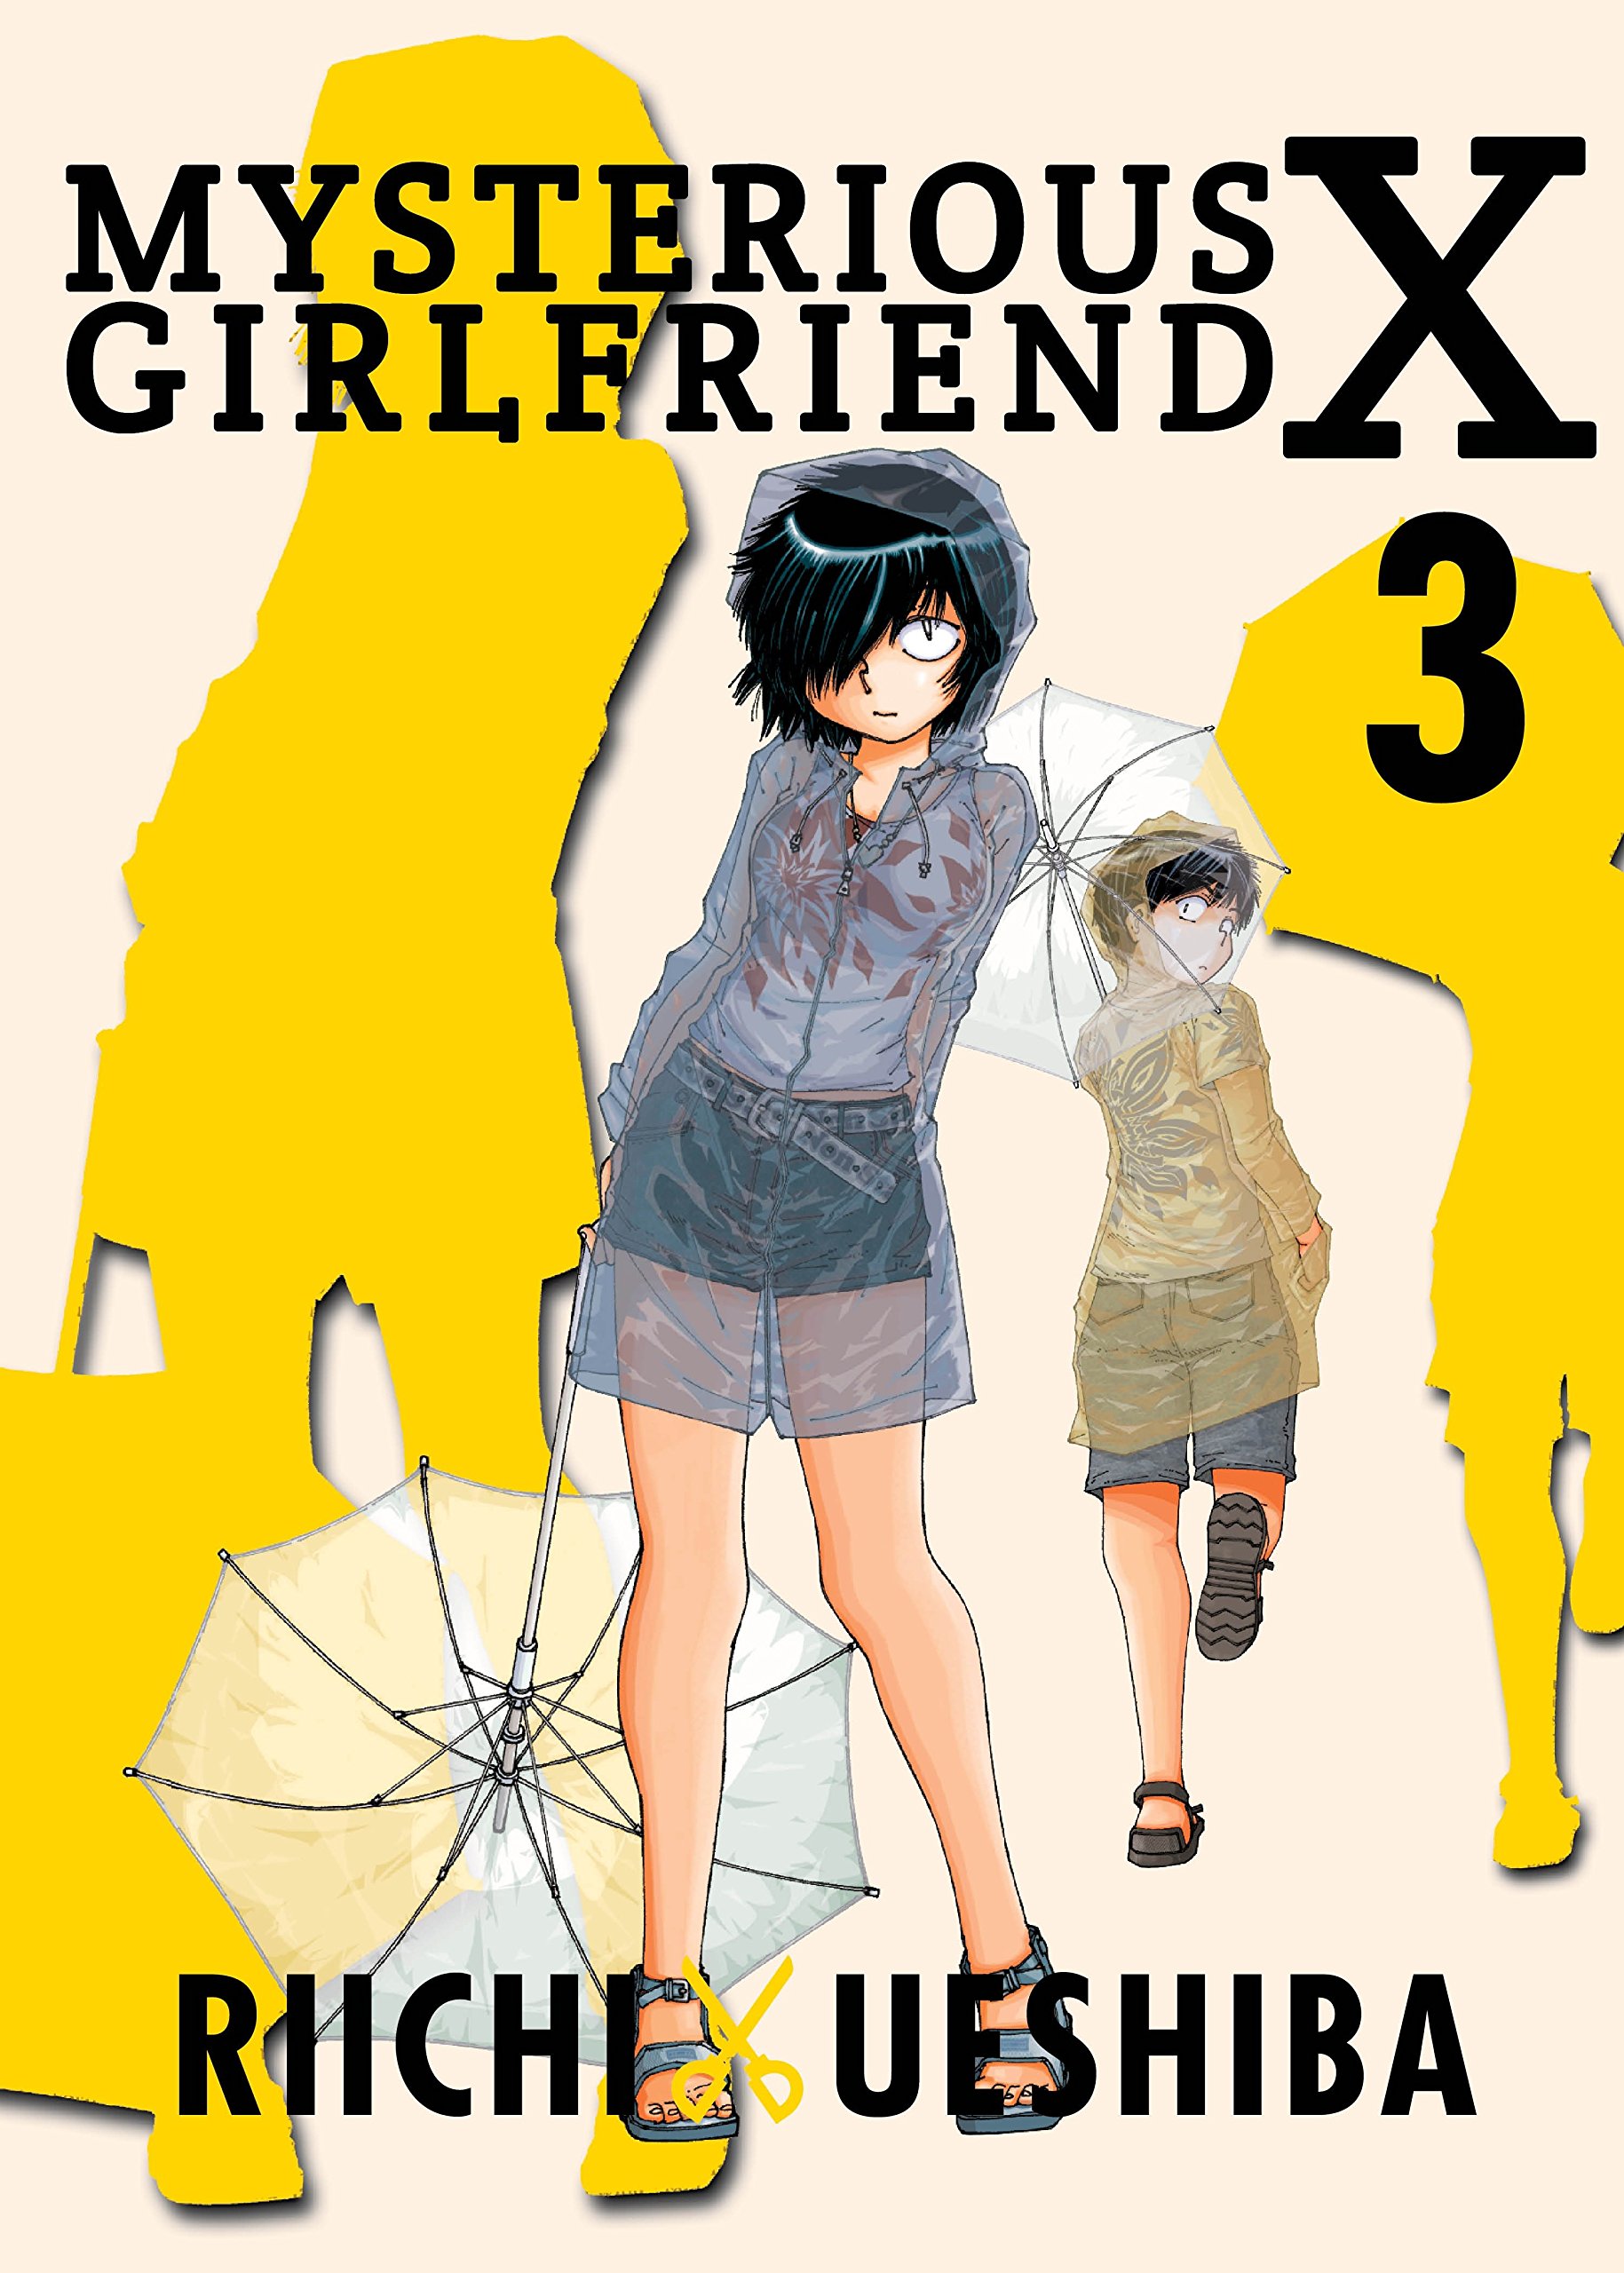 Mysterious Girlfriend X Title Wallpaper